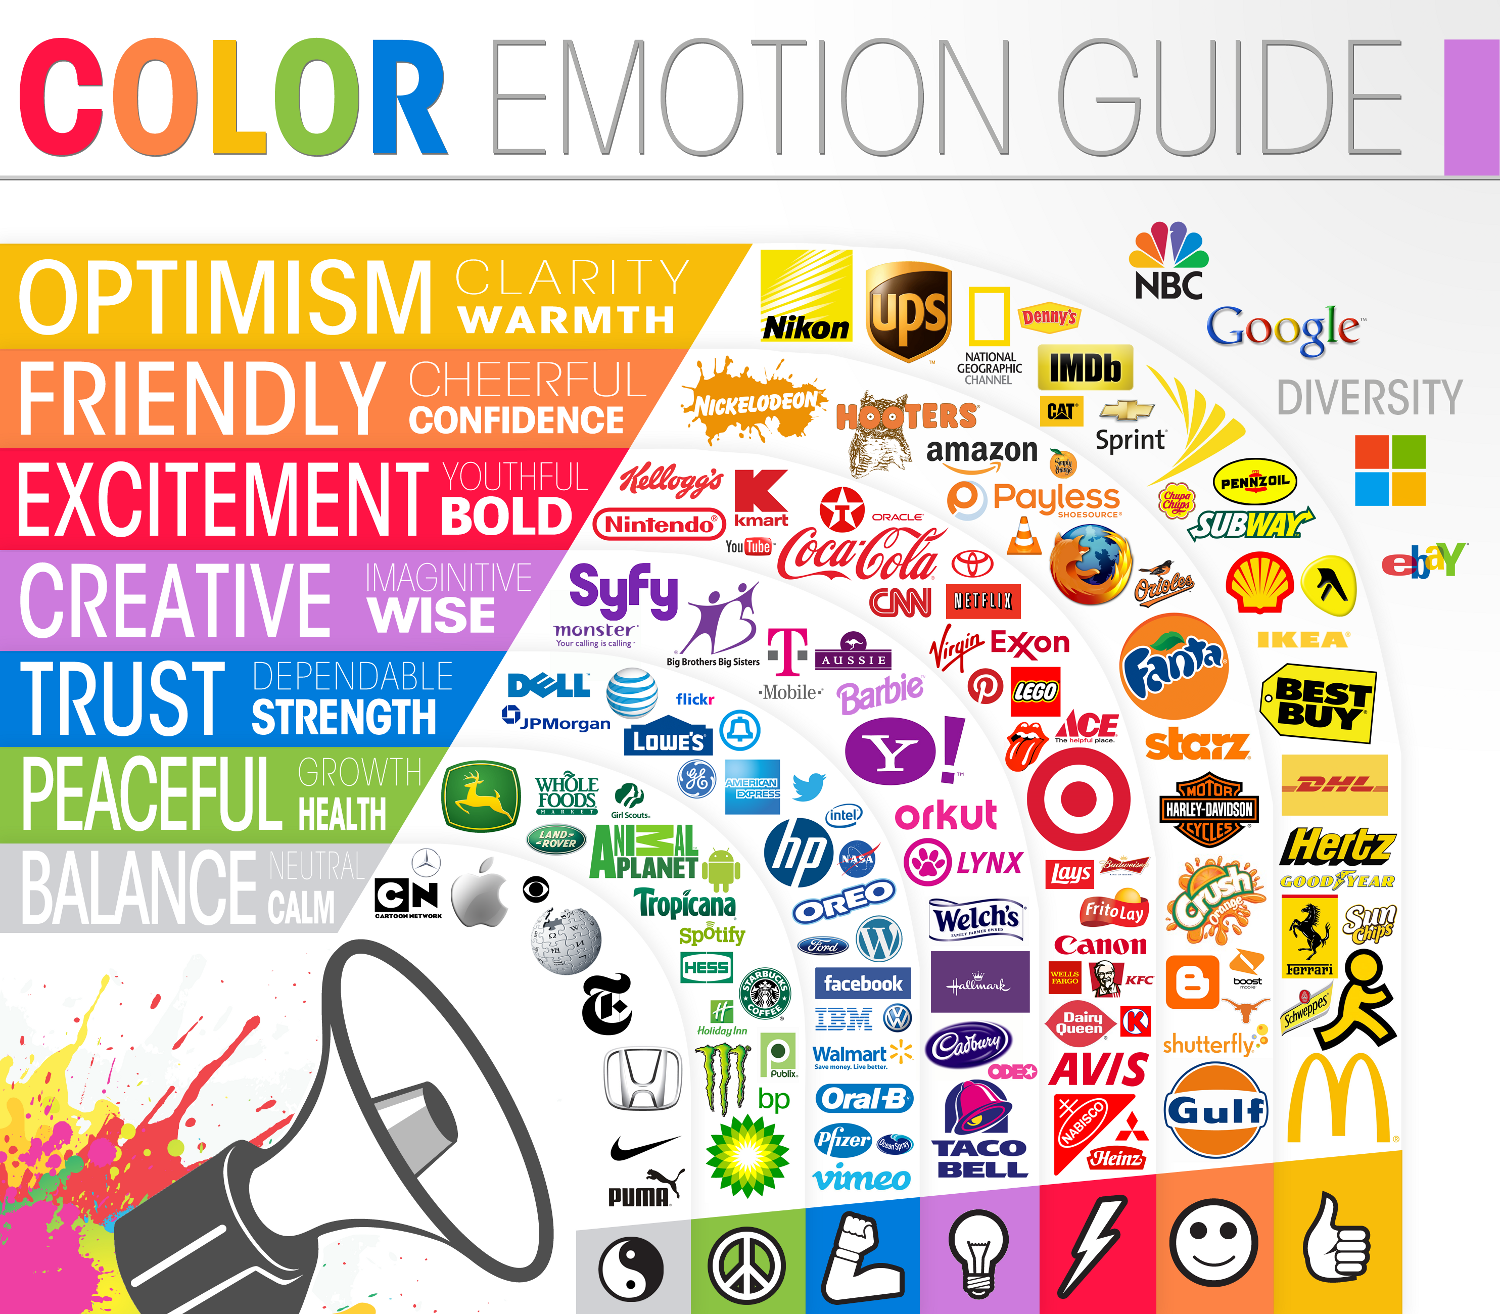 Color Emotion Marketing Guide 